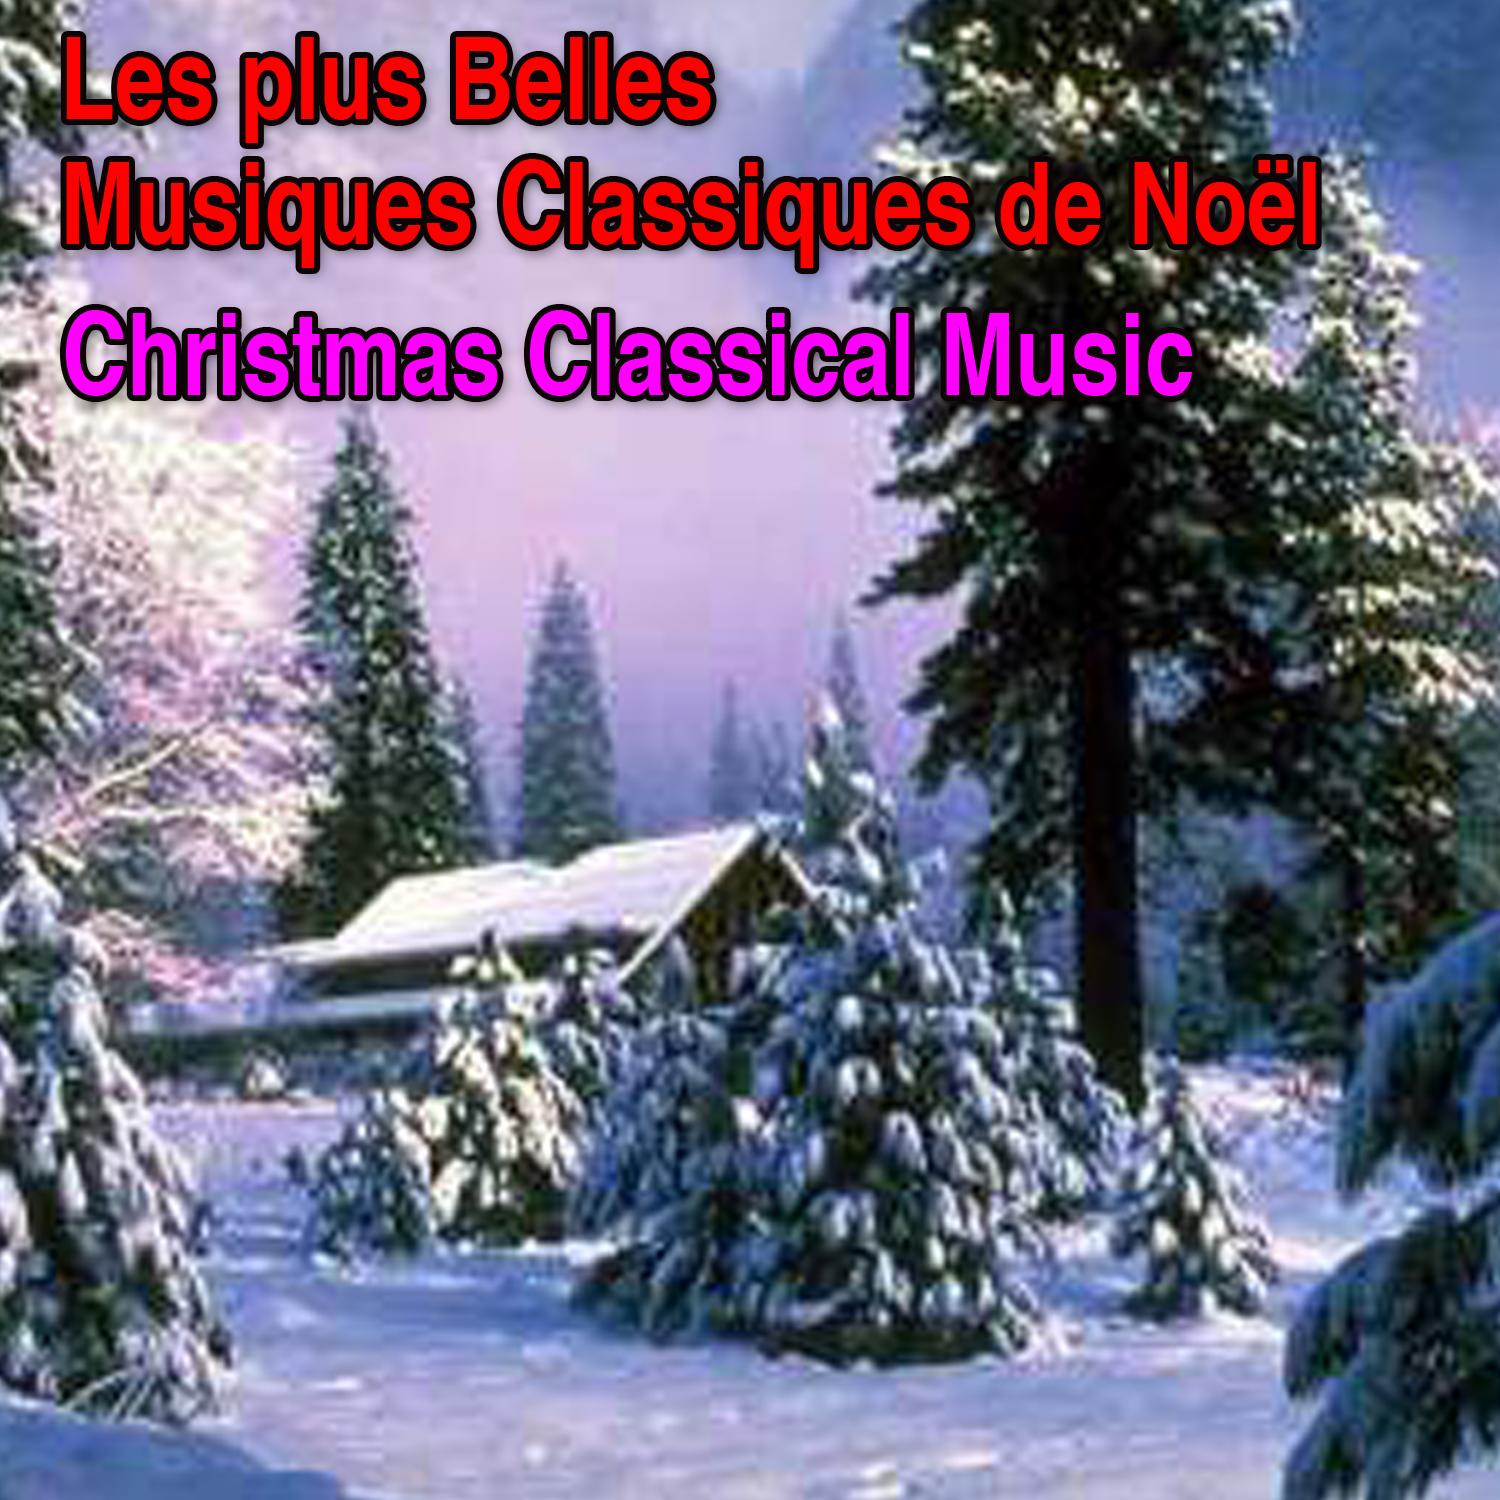 Les plus belles musiques classiques de No l Christmas Classical Music